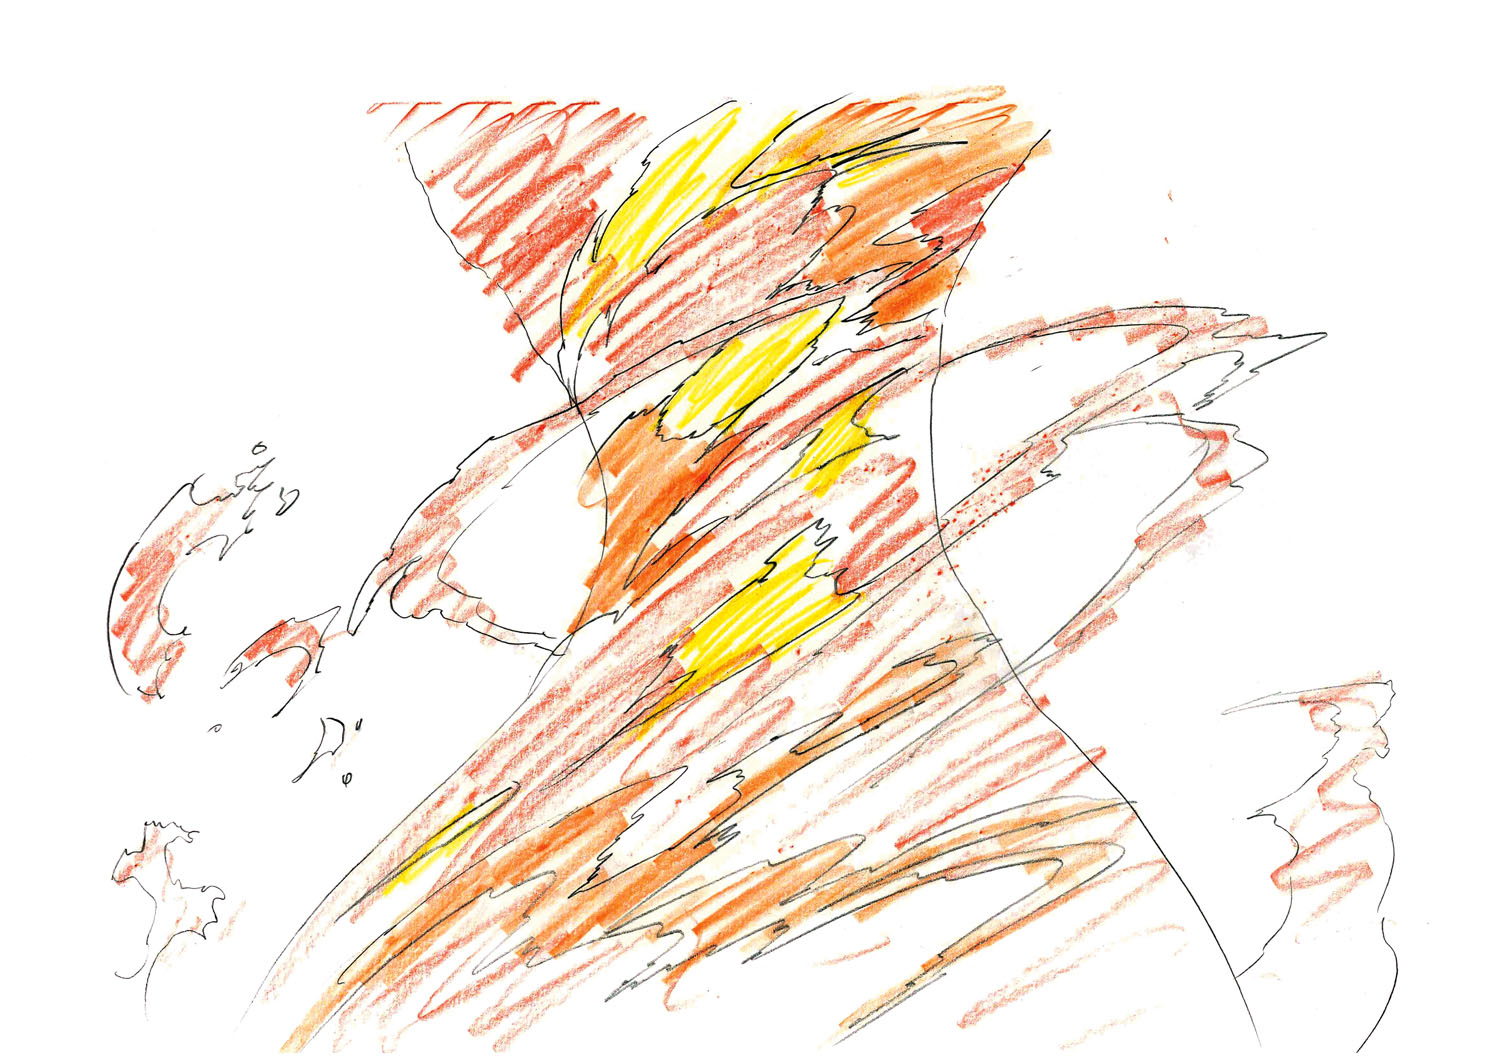 アニメーター小澤和則のエフェクト作画のテクニック 炎の動き を自然に表現する方法 ガジェット通信 Getnews